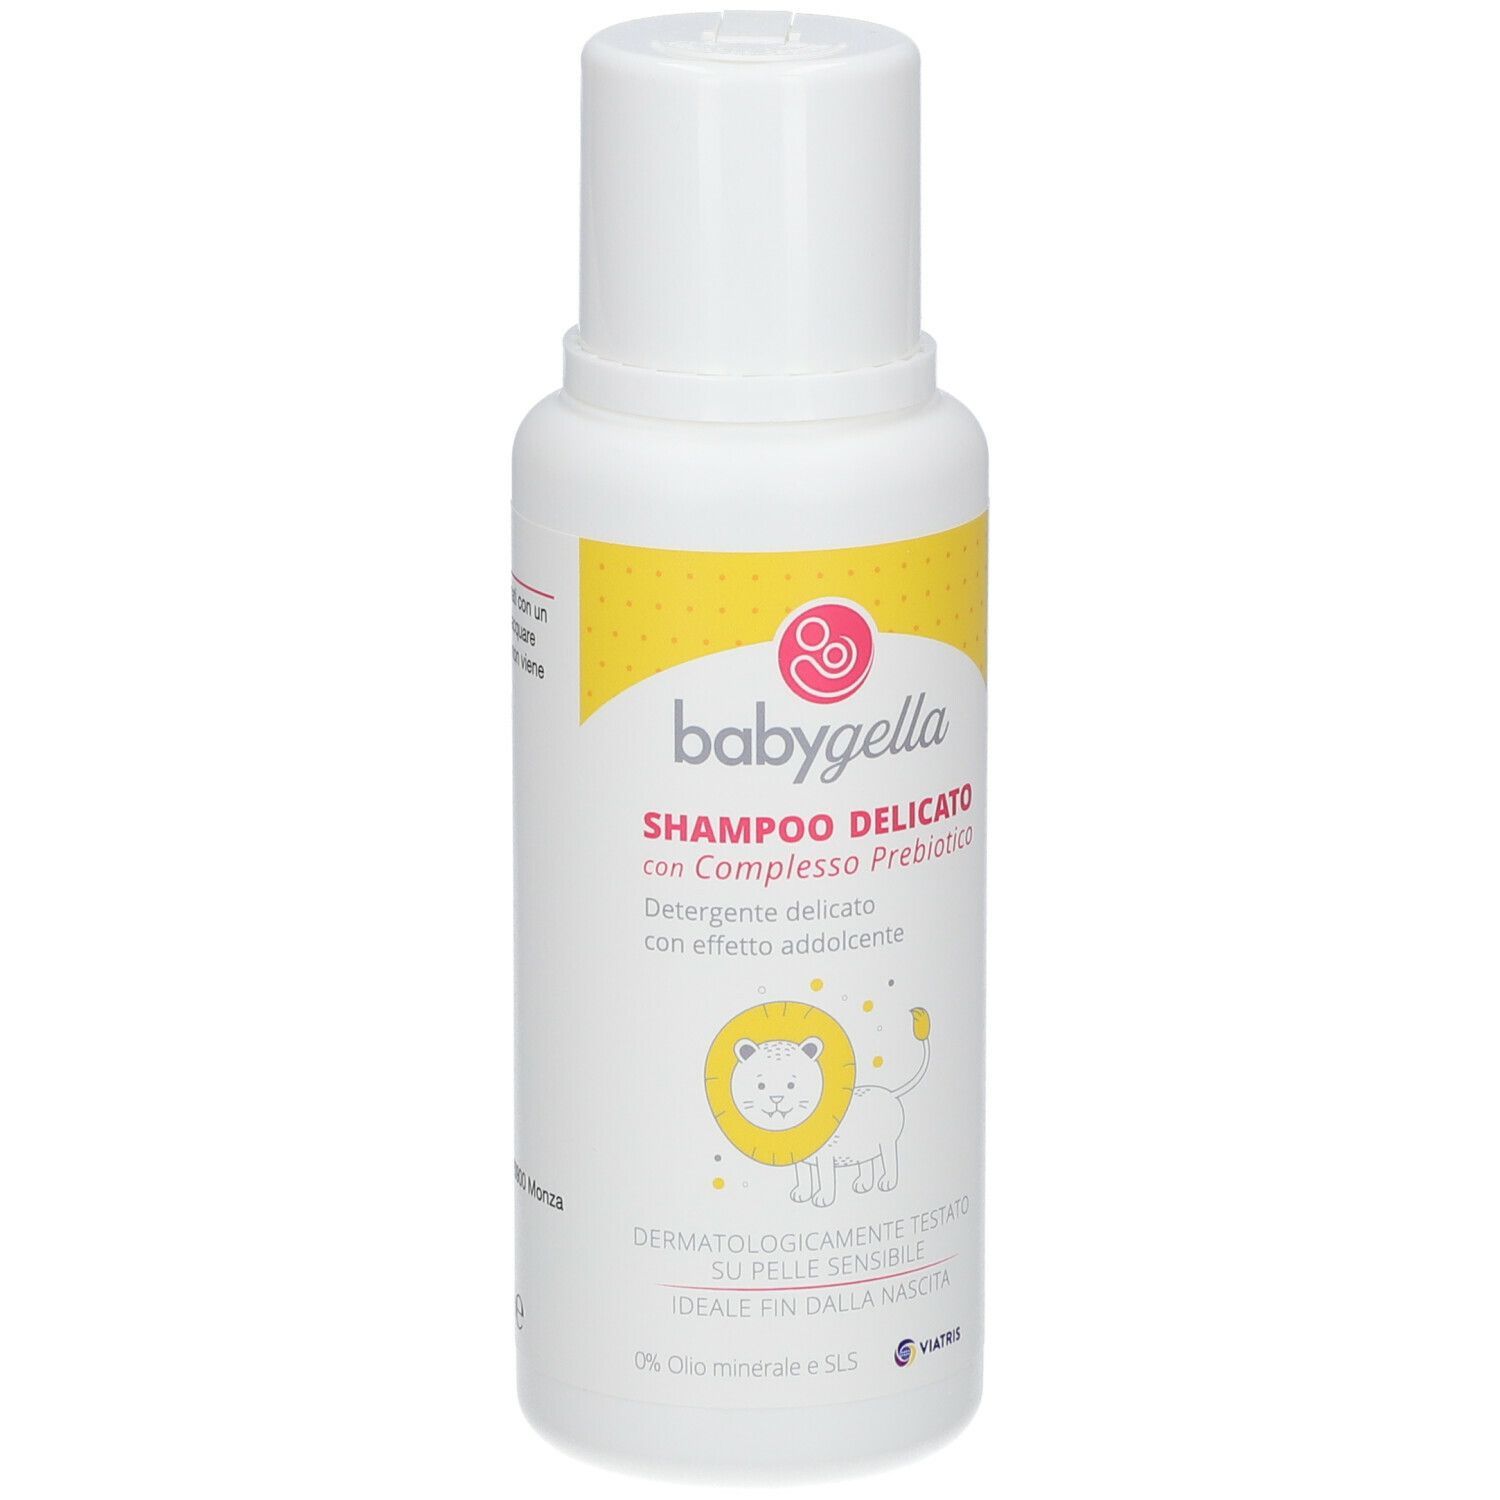 Babygella Shampoo Delicato con Complesso Prebiotico Flacone